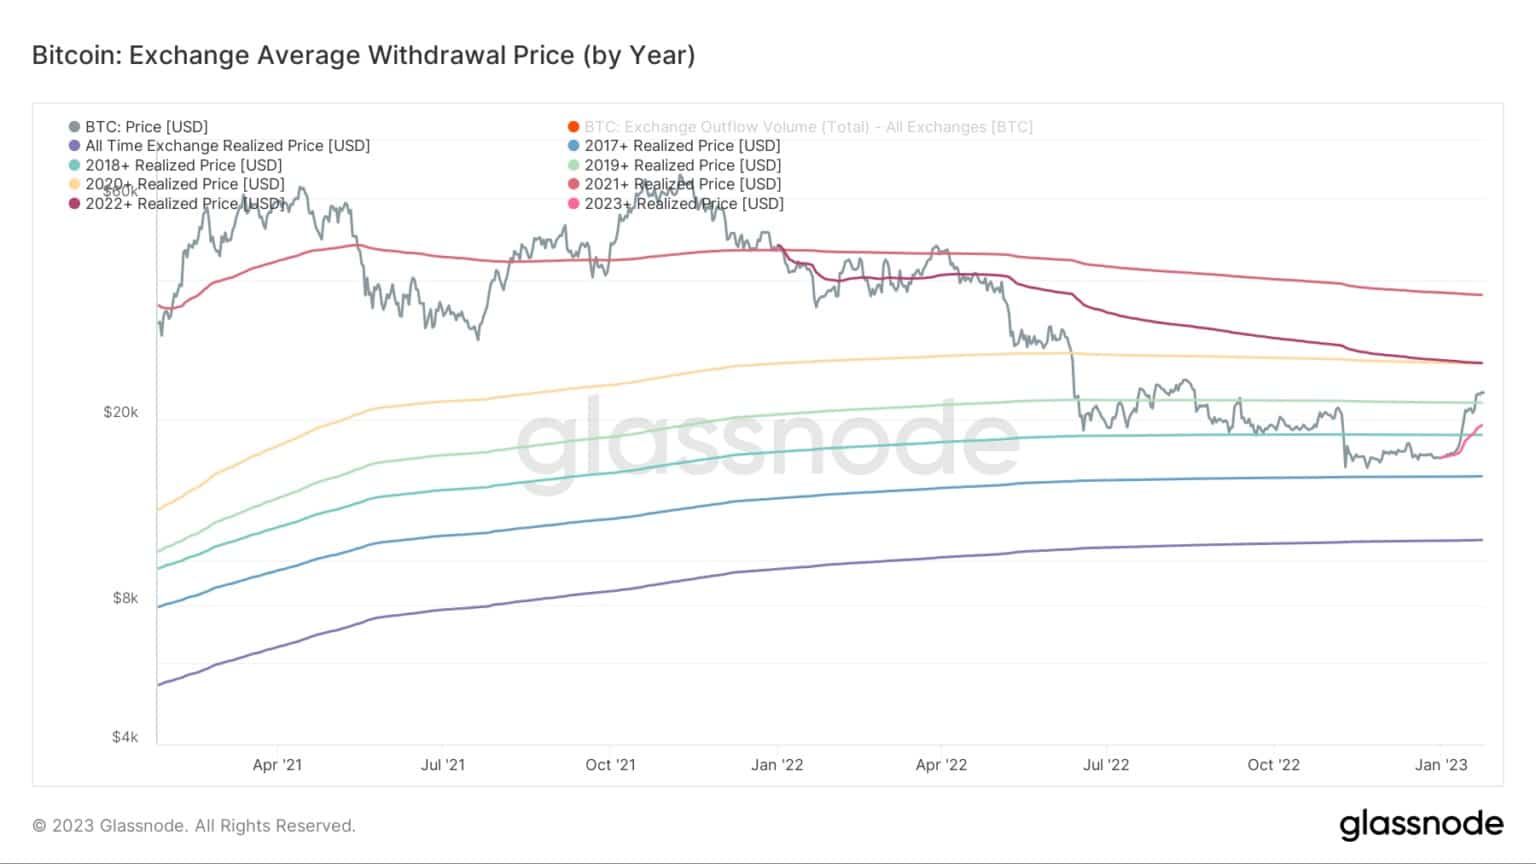 Wykres przedstawiający giełdową średnią cenę wycofania Bitcoina w poszczególnych latach (Źródło: Glassnode)